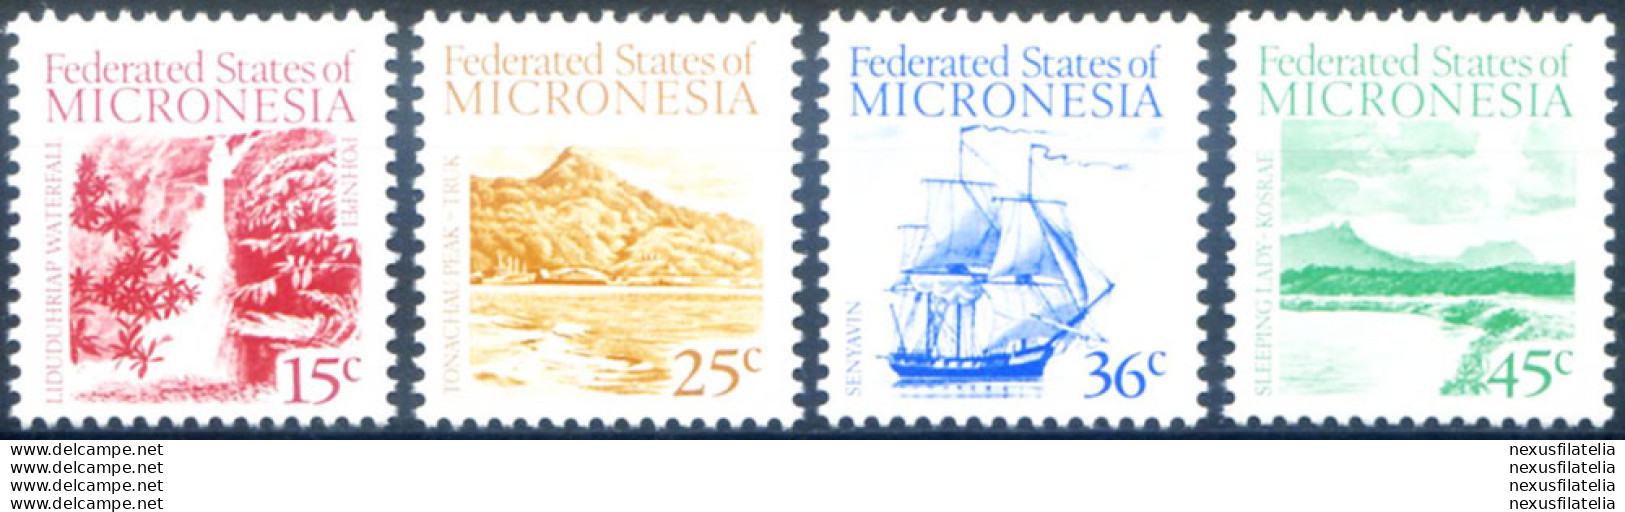 Definitiva. Paesaggi 1988. - Micronesia